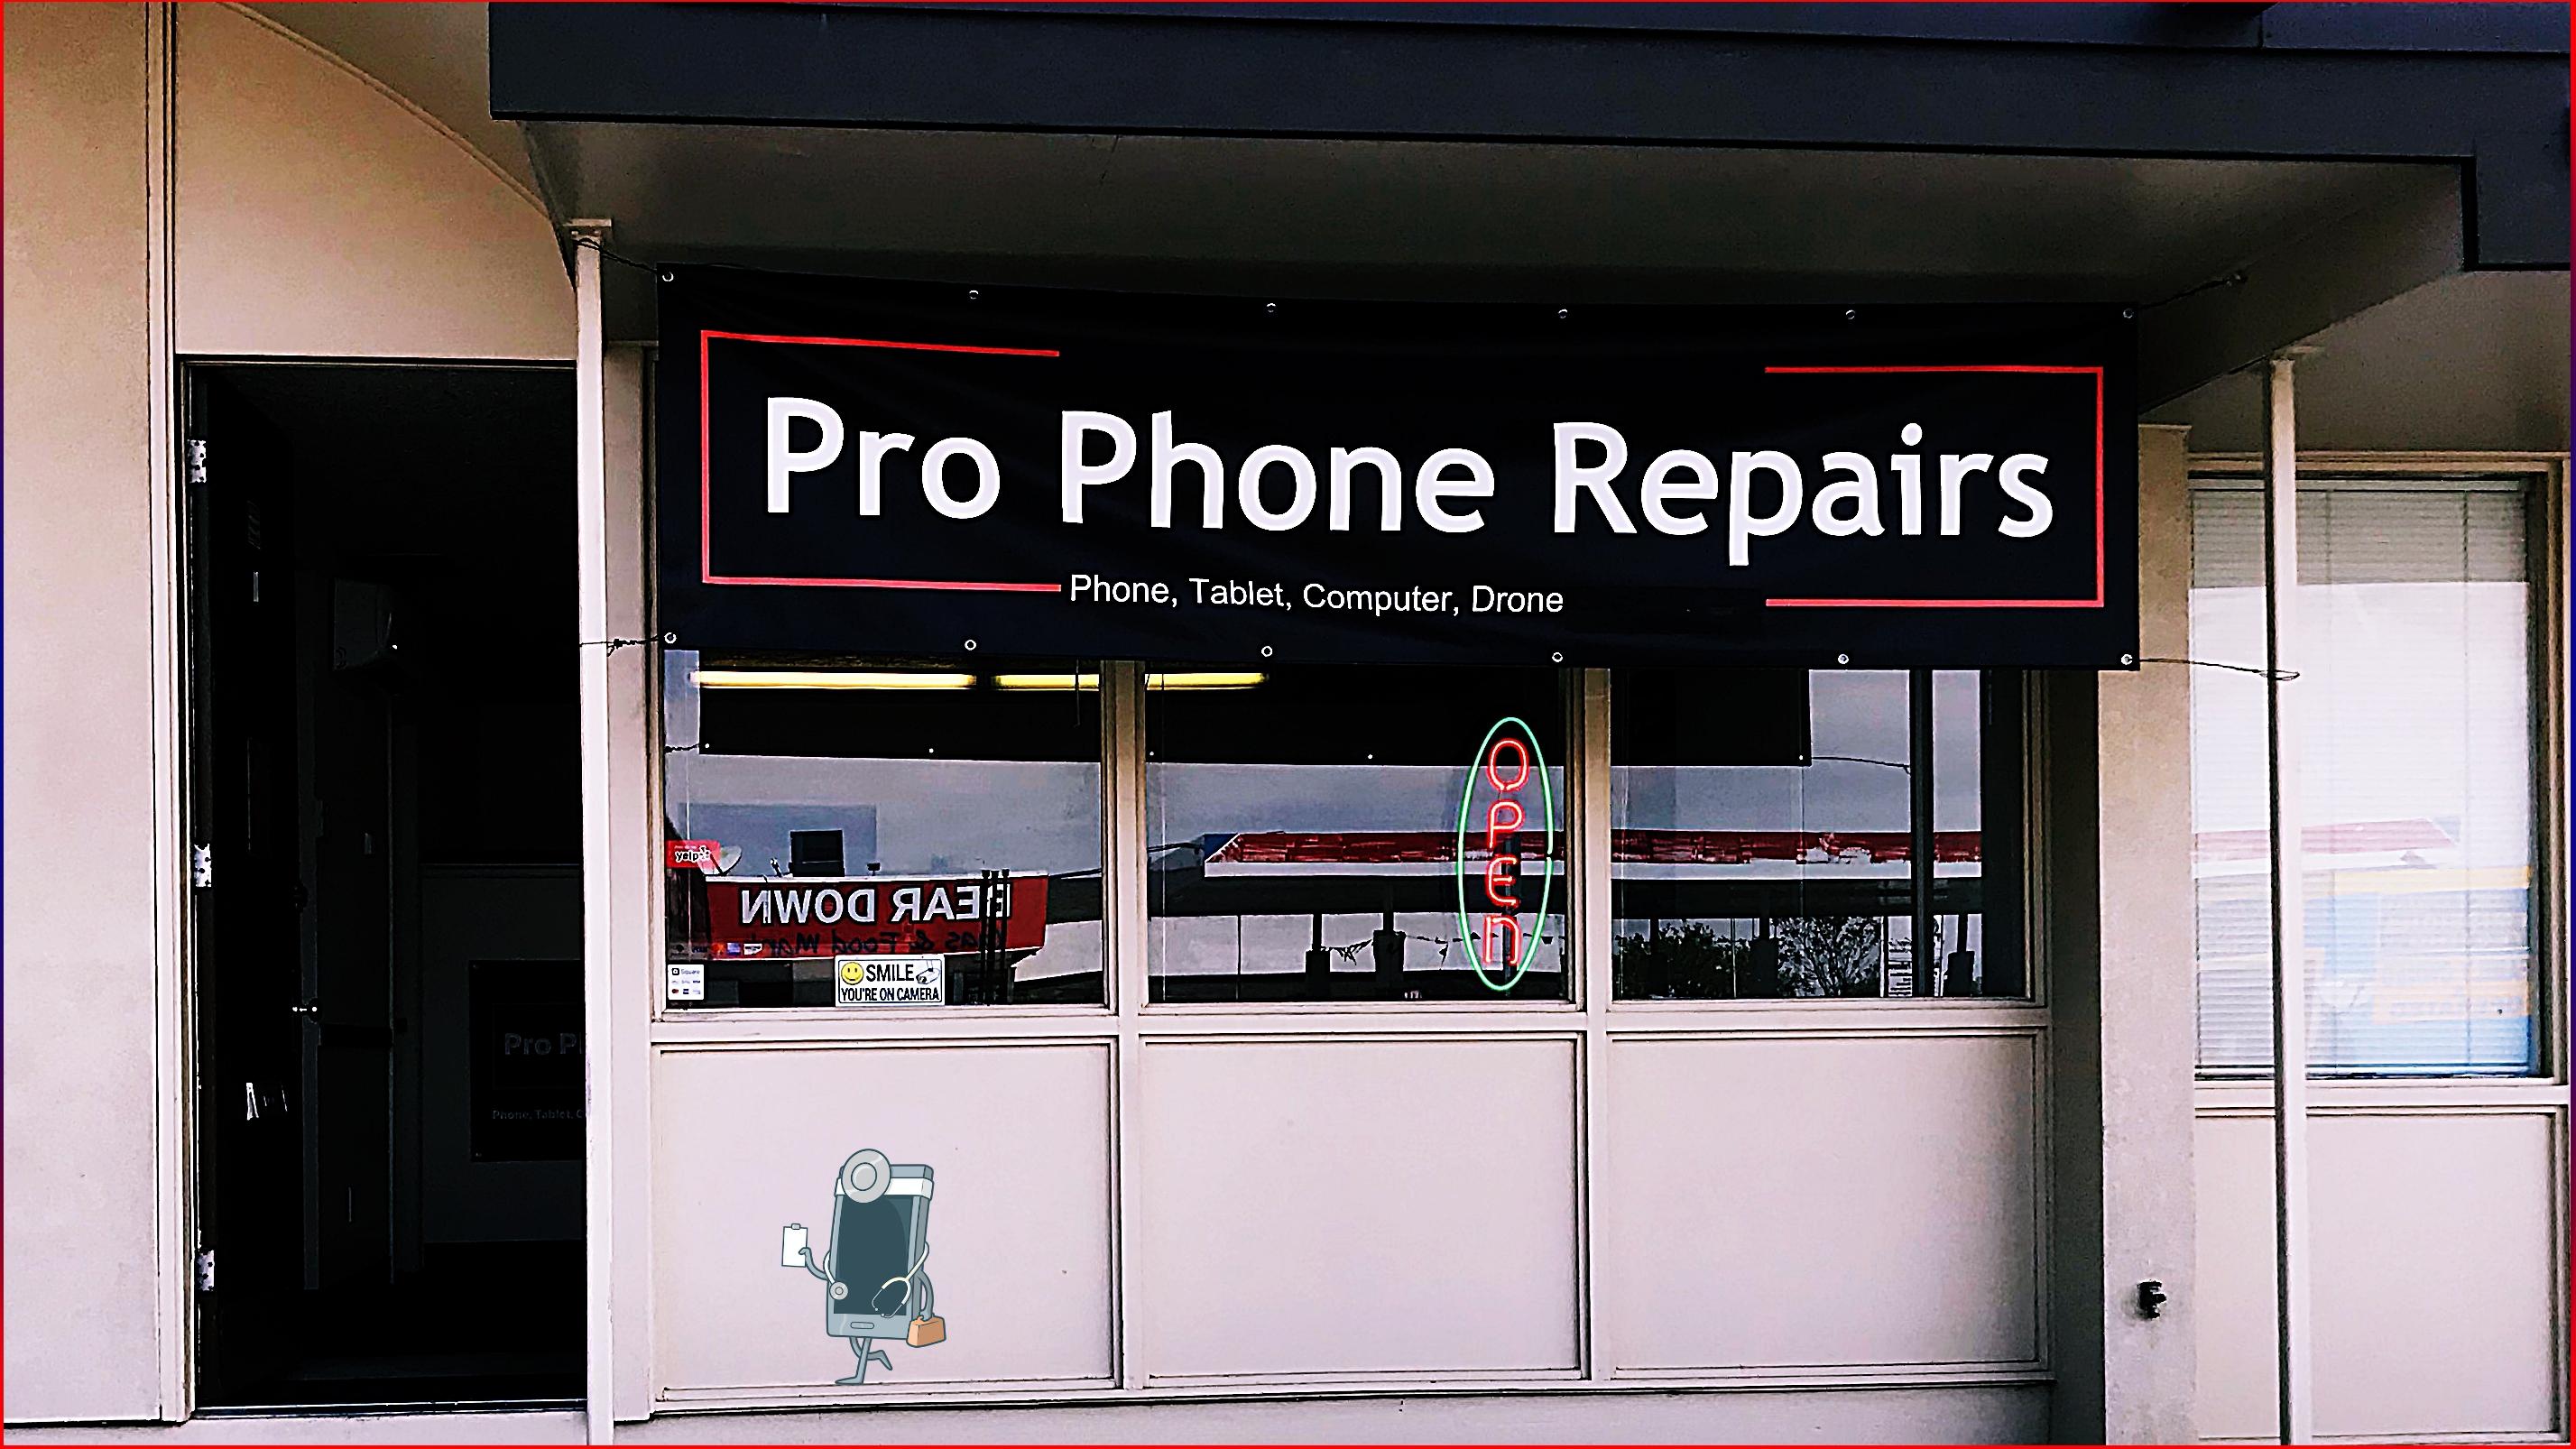 Pro Phone Repairs of Albuquerque -  mobile phone repair shop in Albuquerque